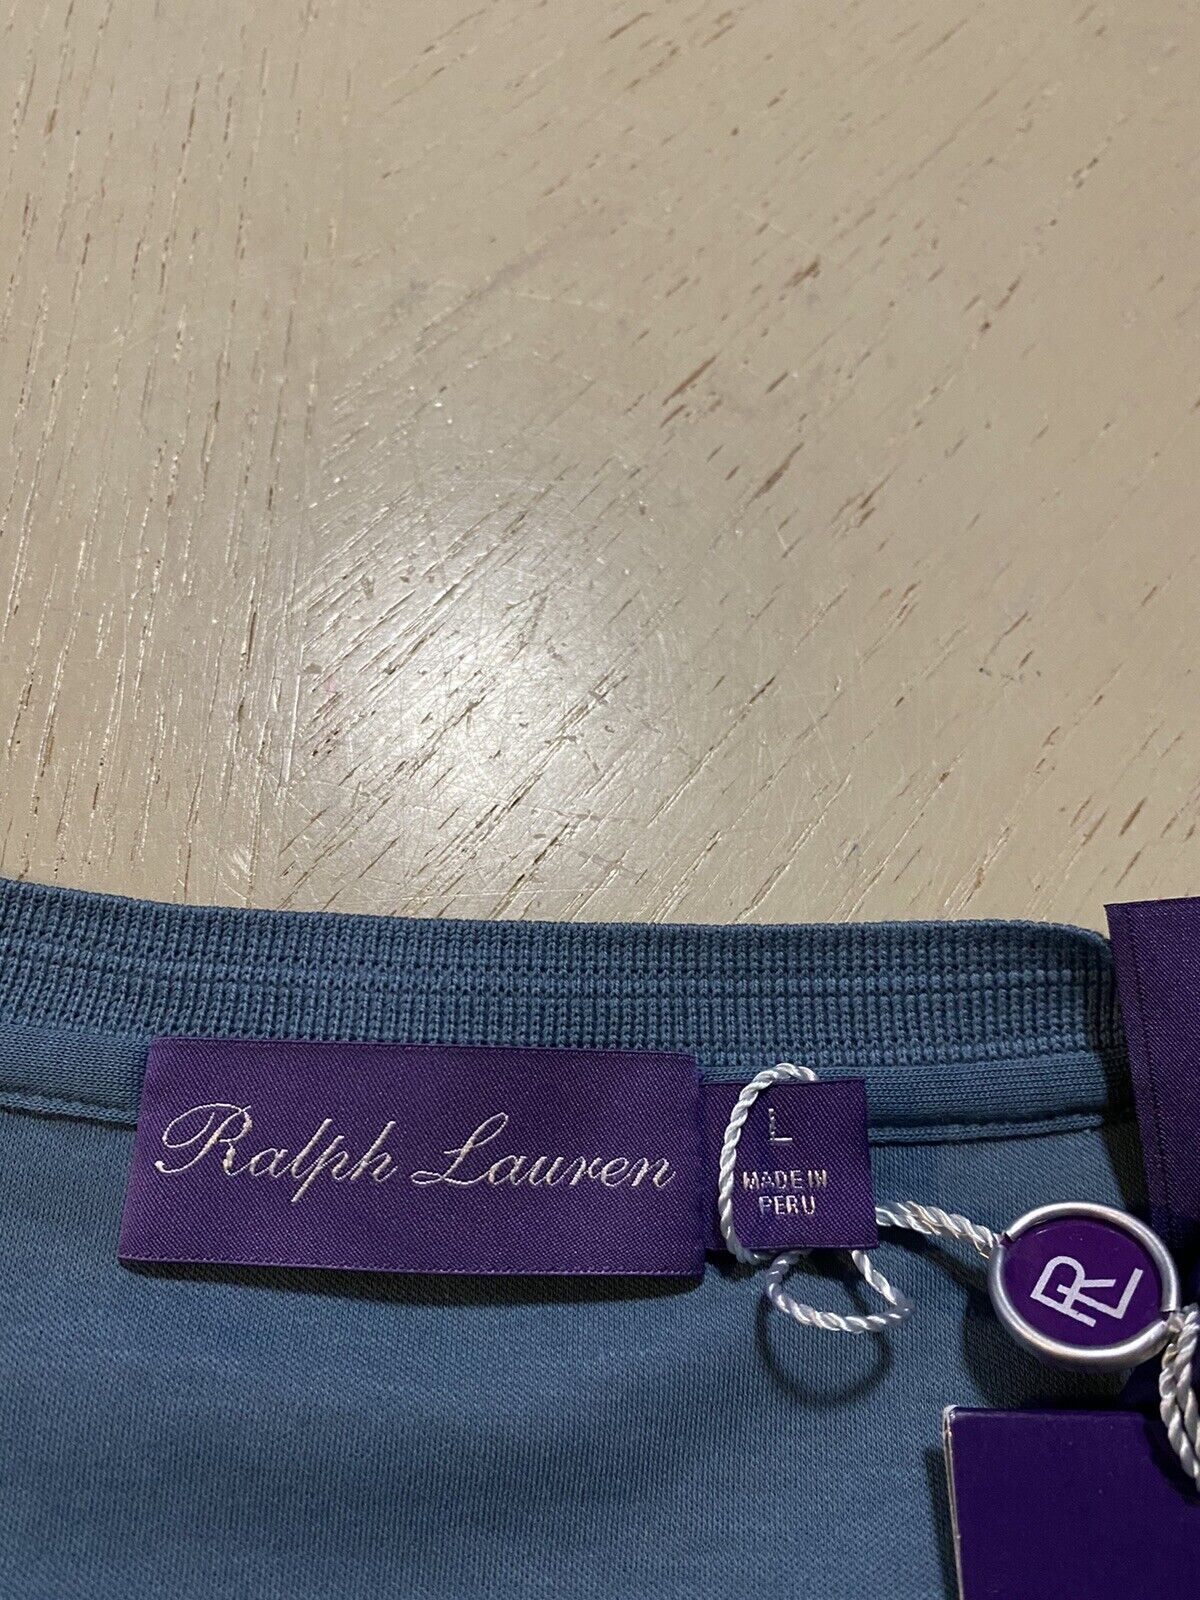 NWT Ralph Lauren Purple Label Men’s Solid Henley Shirt Blue Size L